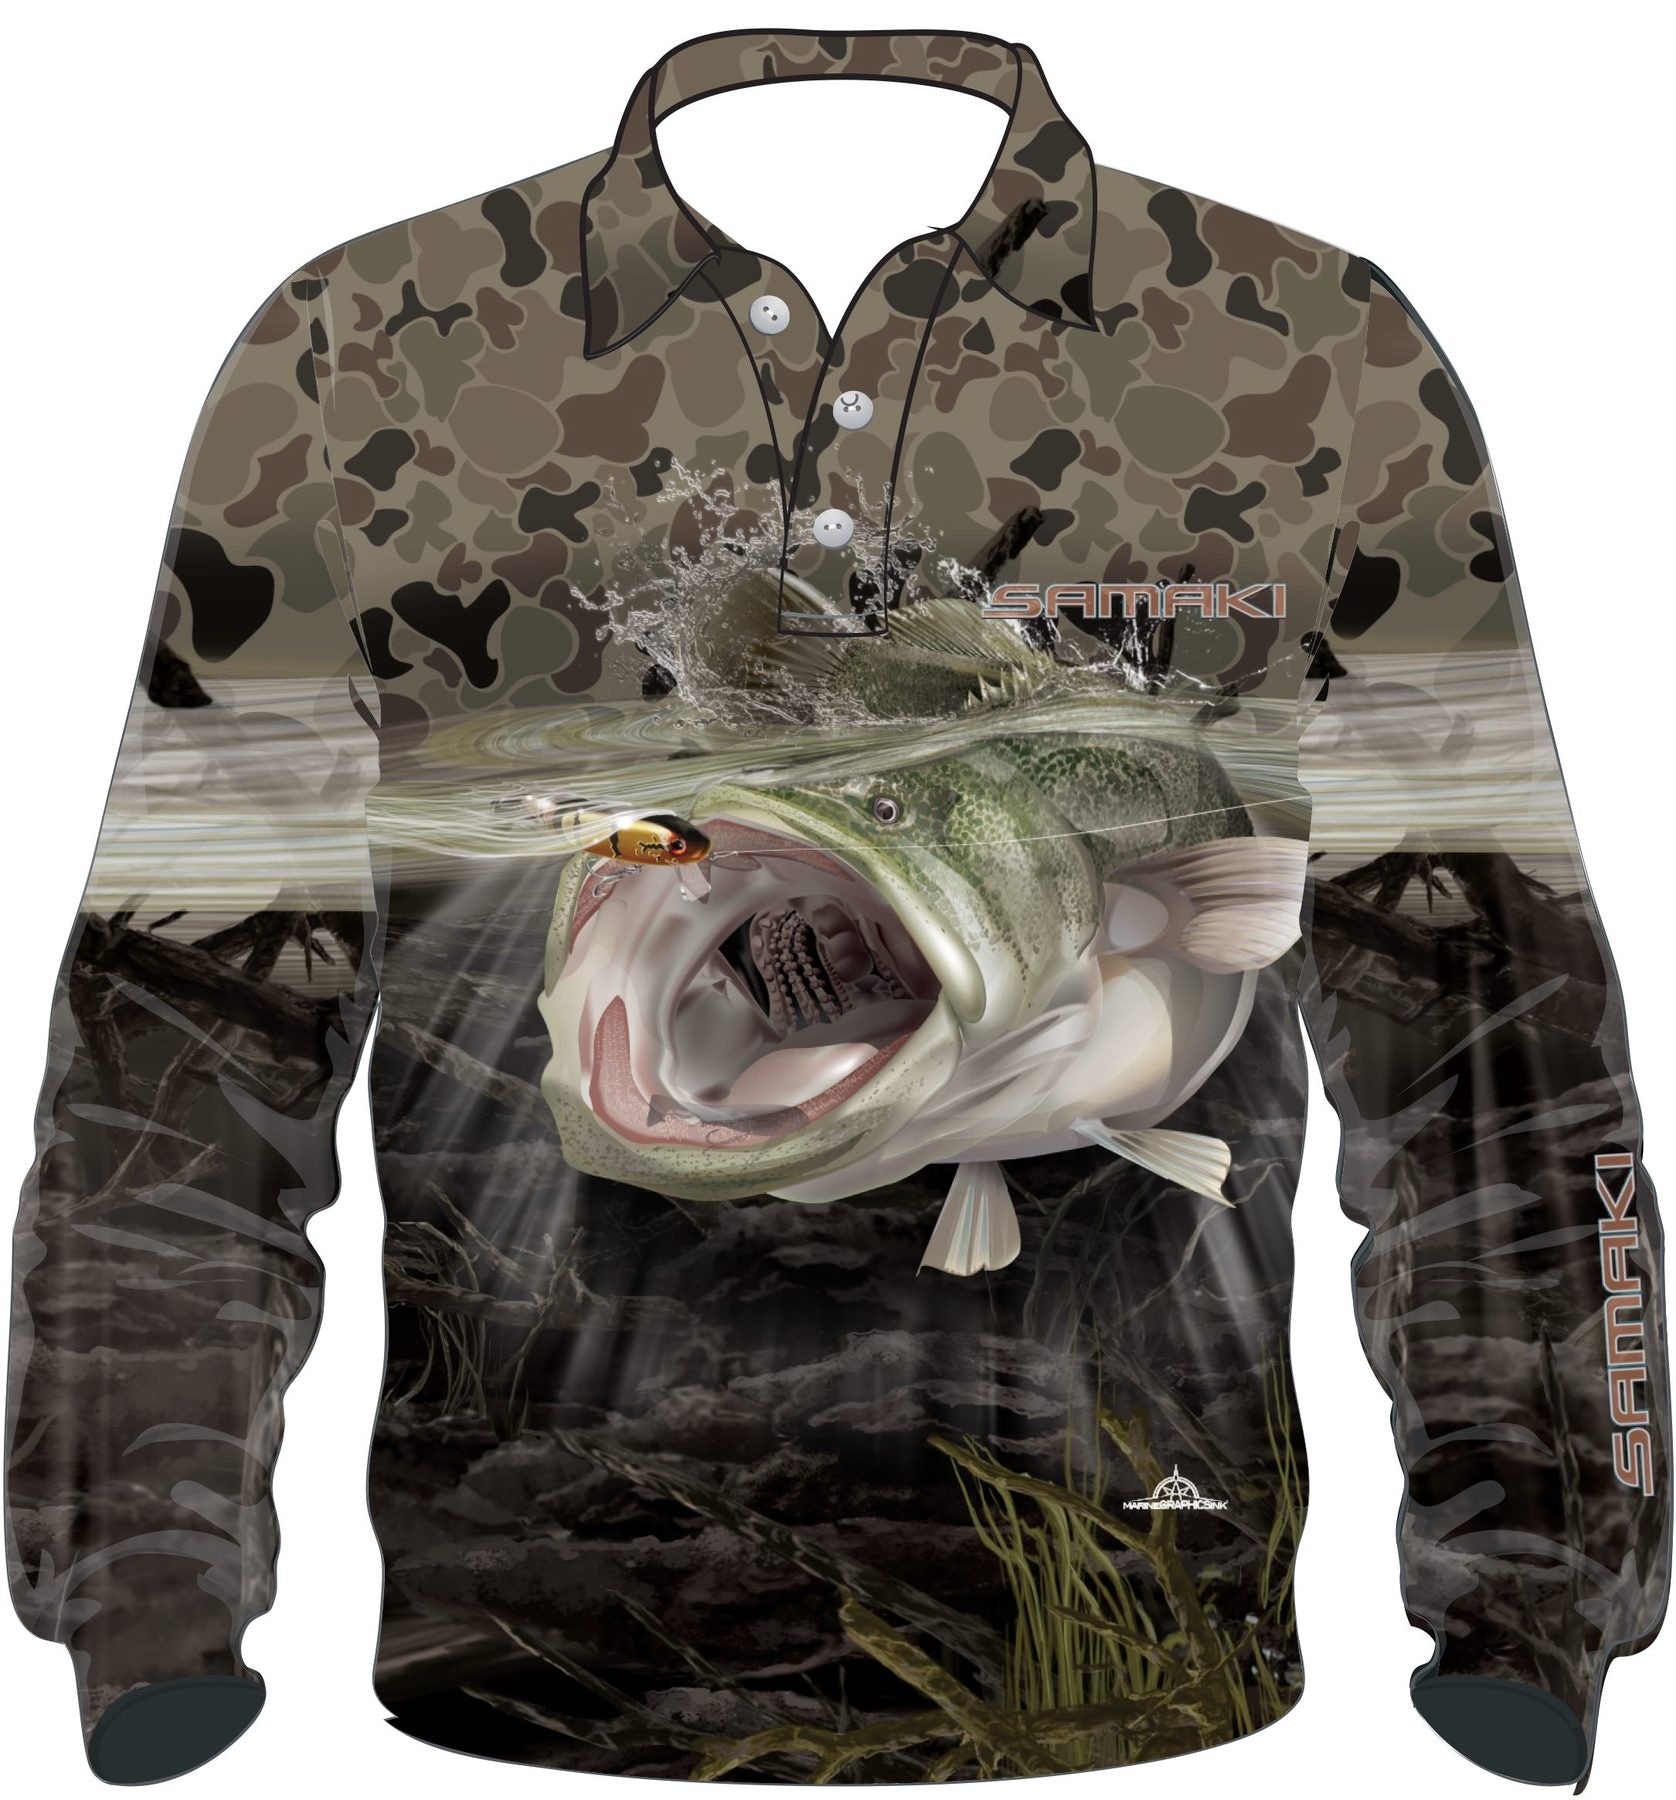 Samaki Kids Camo Cod L/S Fishing Shirt